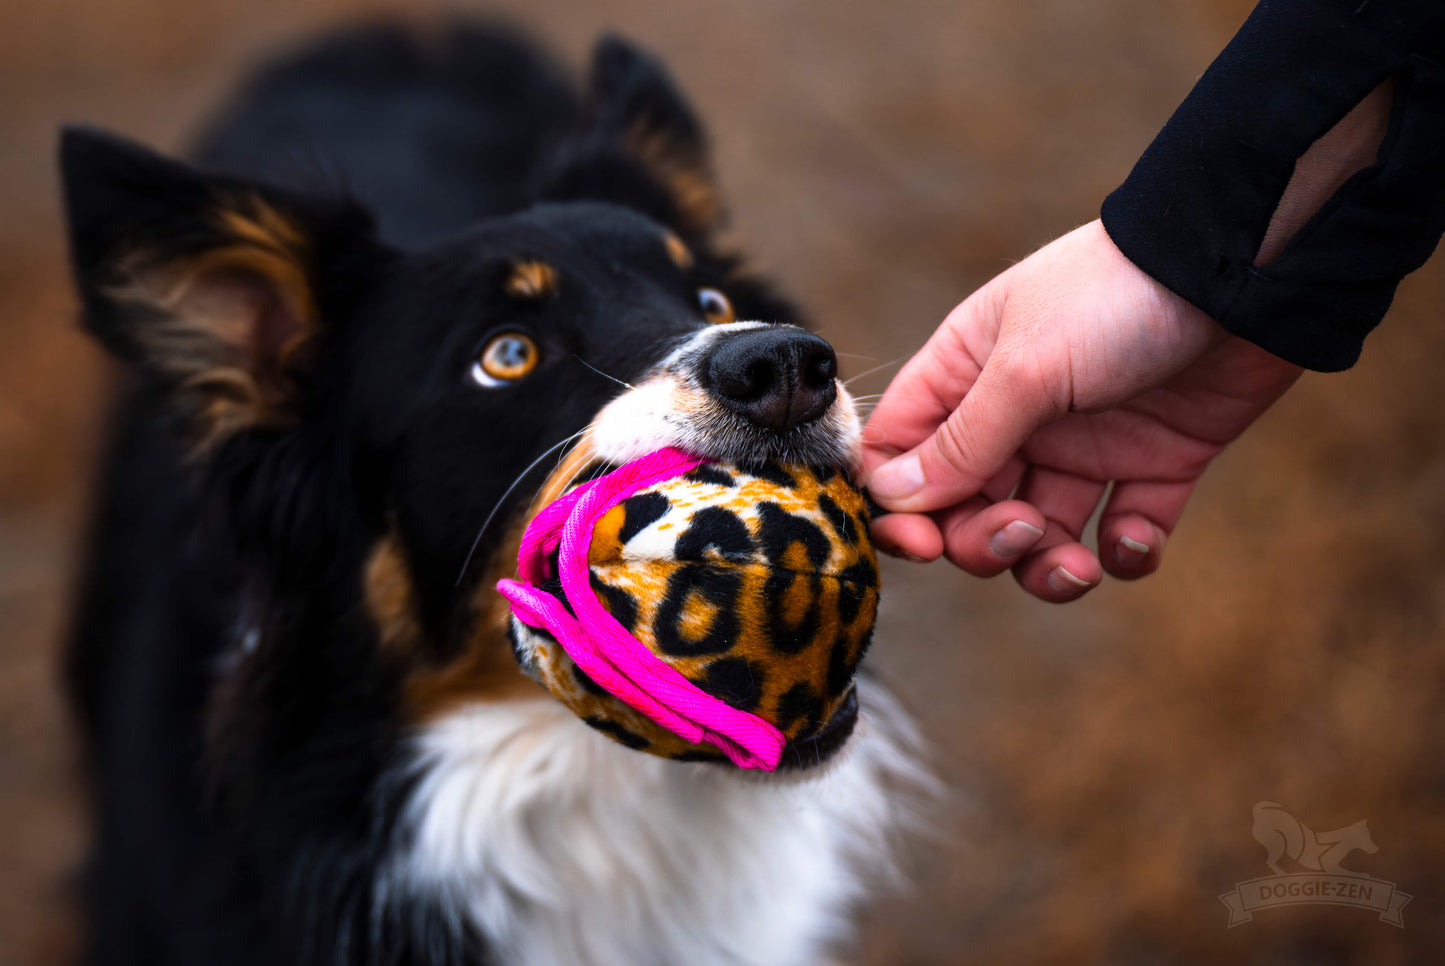 Doggie-zen Belønningsball Med Knitring